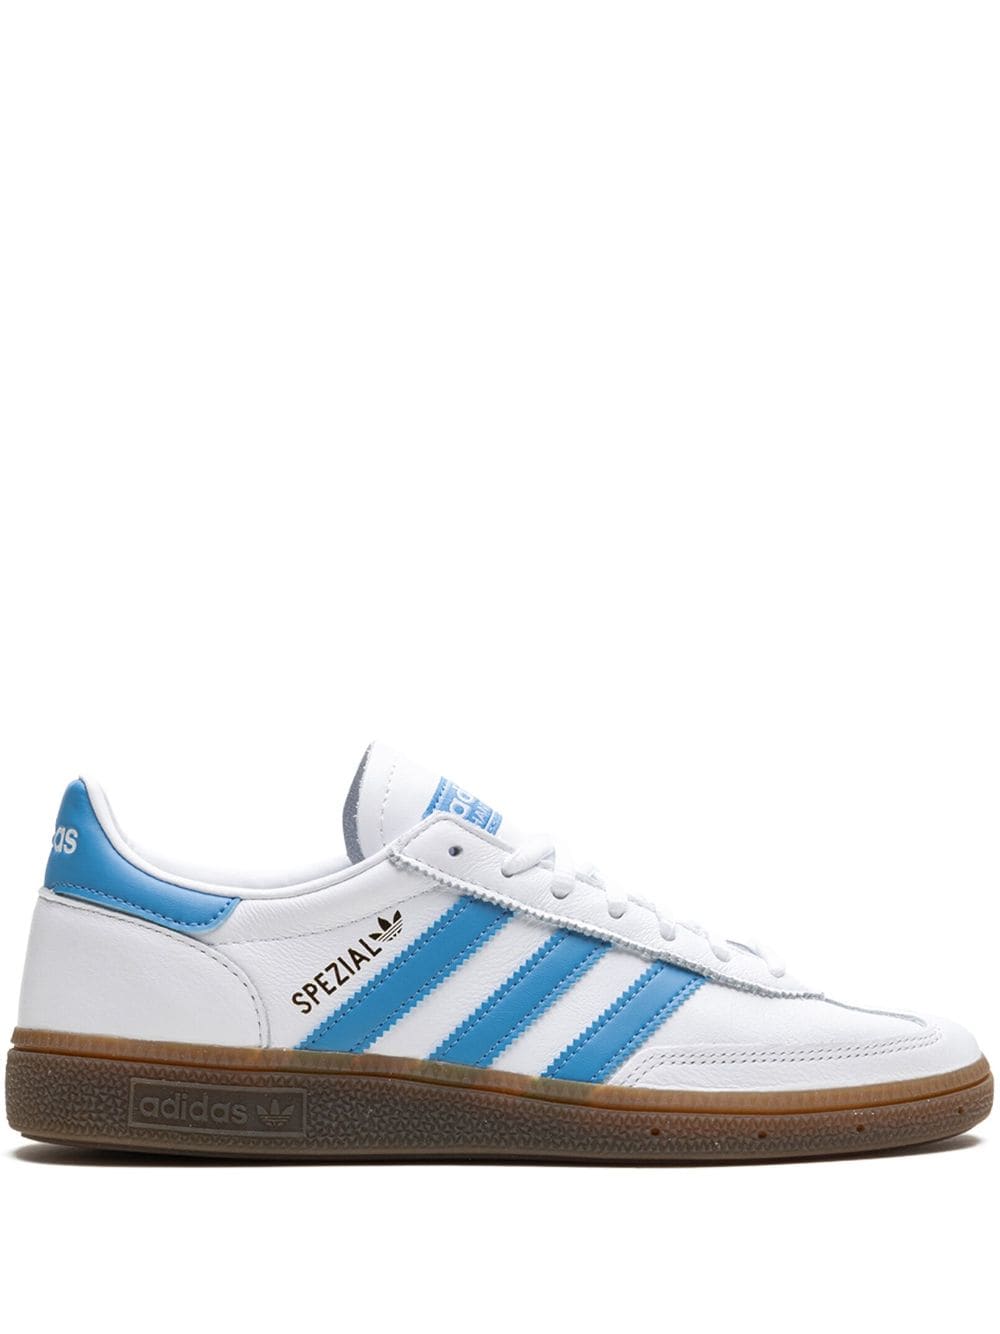 Adidas Originals Handball Spezial "white/light Blue" Sneakers